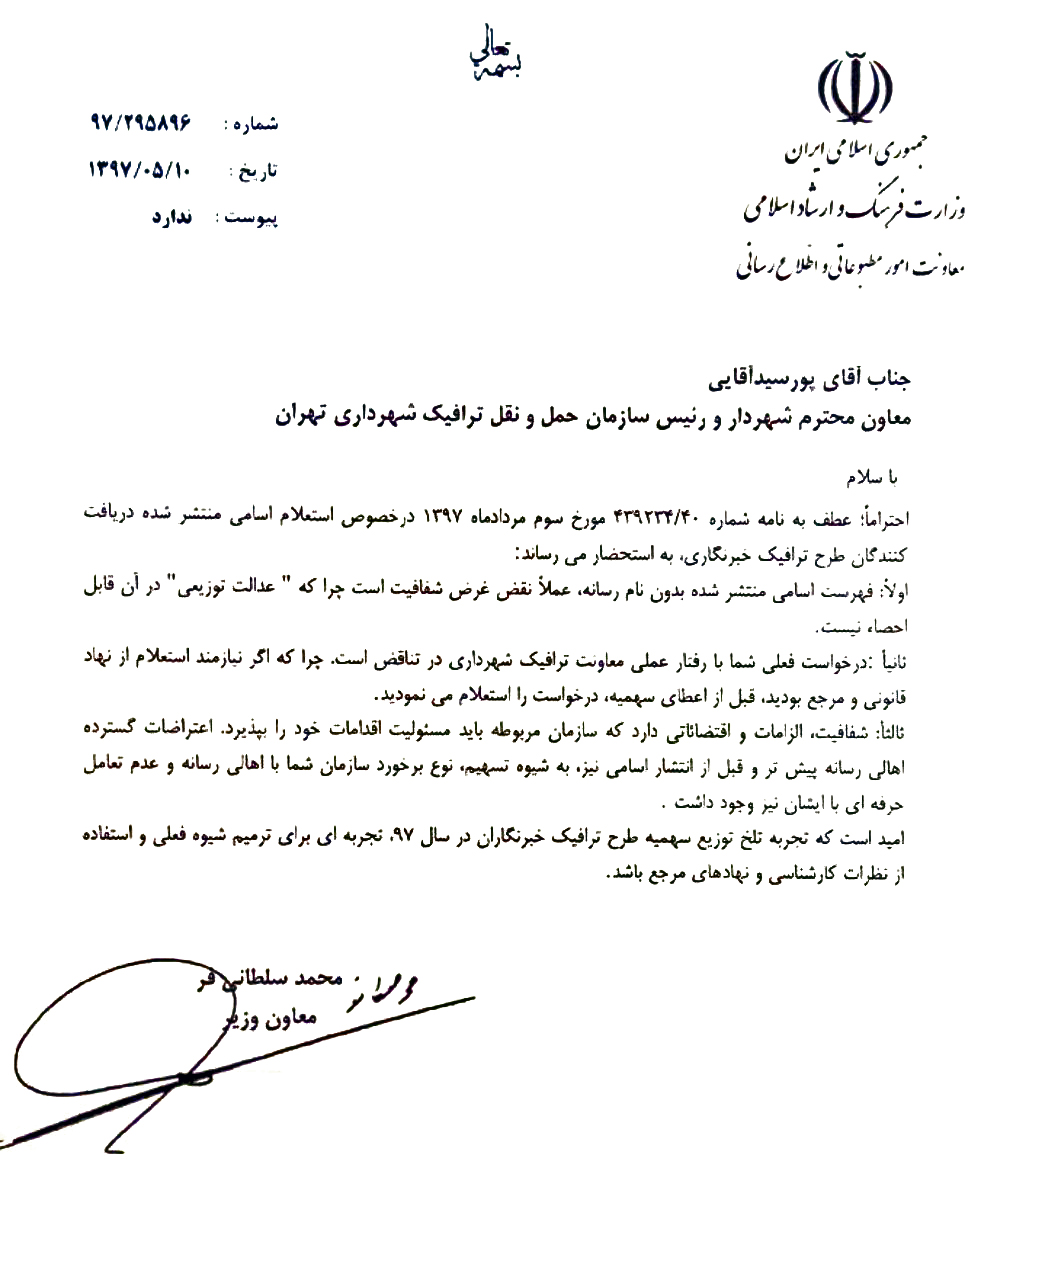 معاون وزیر ارشاد در چند سطر معاون شهردار تهران را با خاک یکسان کرد! (عکس)